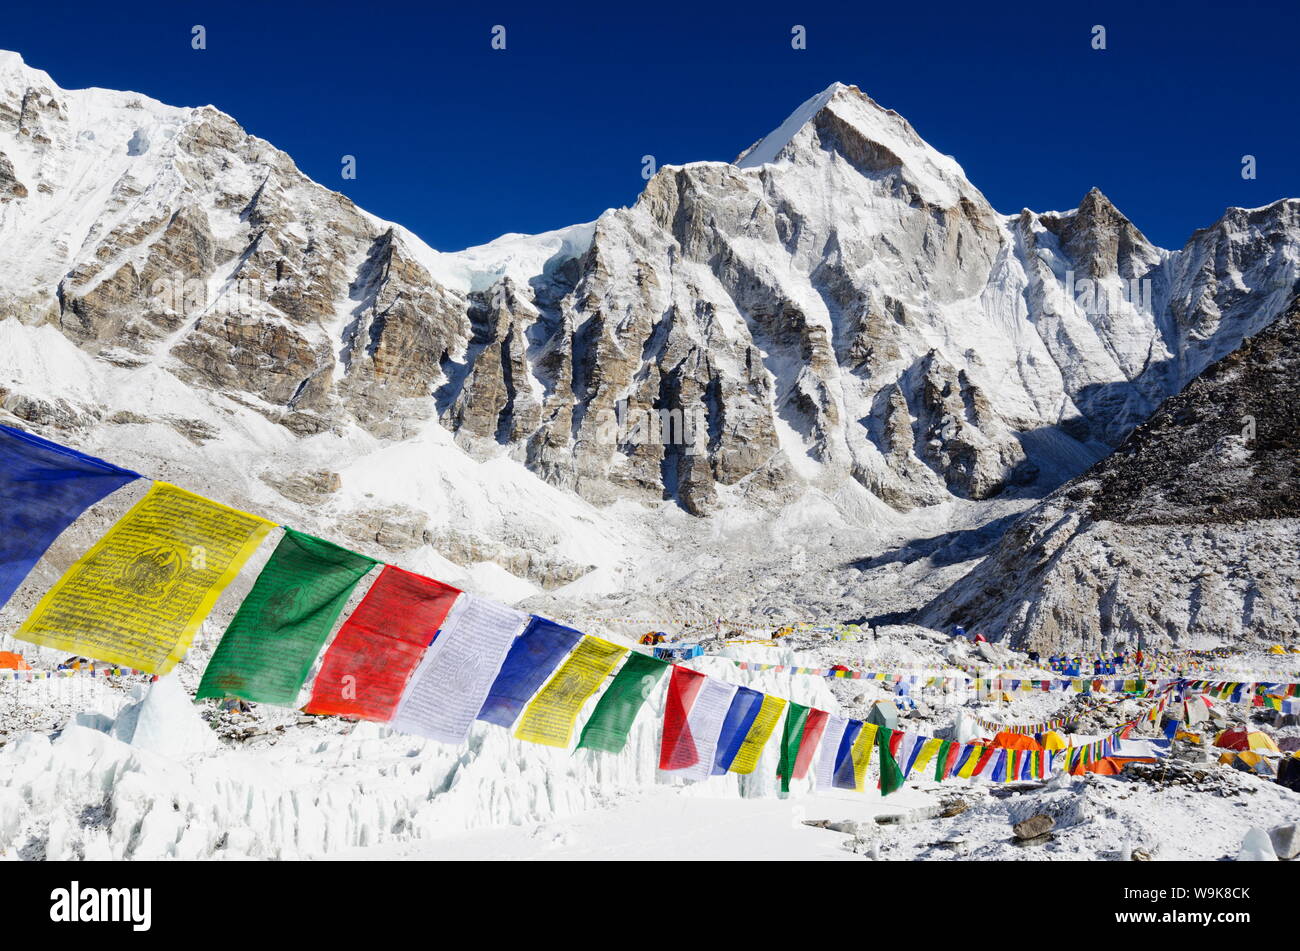 Les drapeaux de prières au camp de base de l'Everest, Everest Solu Khumbu, région du parc national de Sagarmatha, UNESCO World Heritage Site, Népal, Himalaya, Asie Banque D'Images